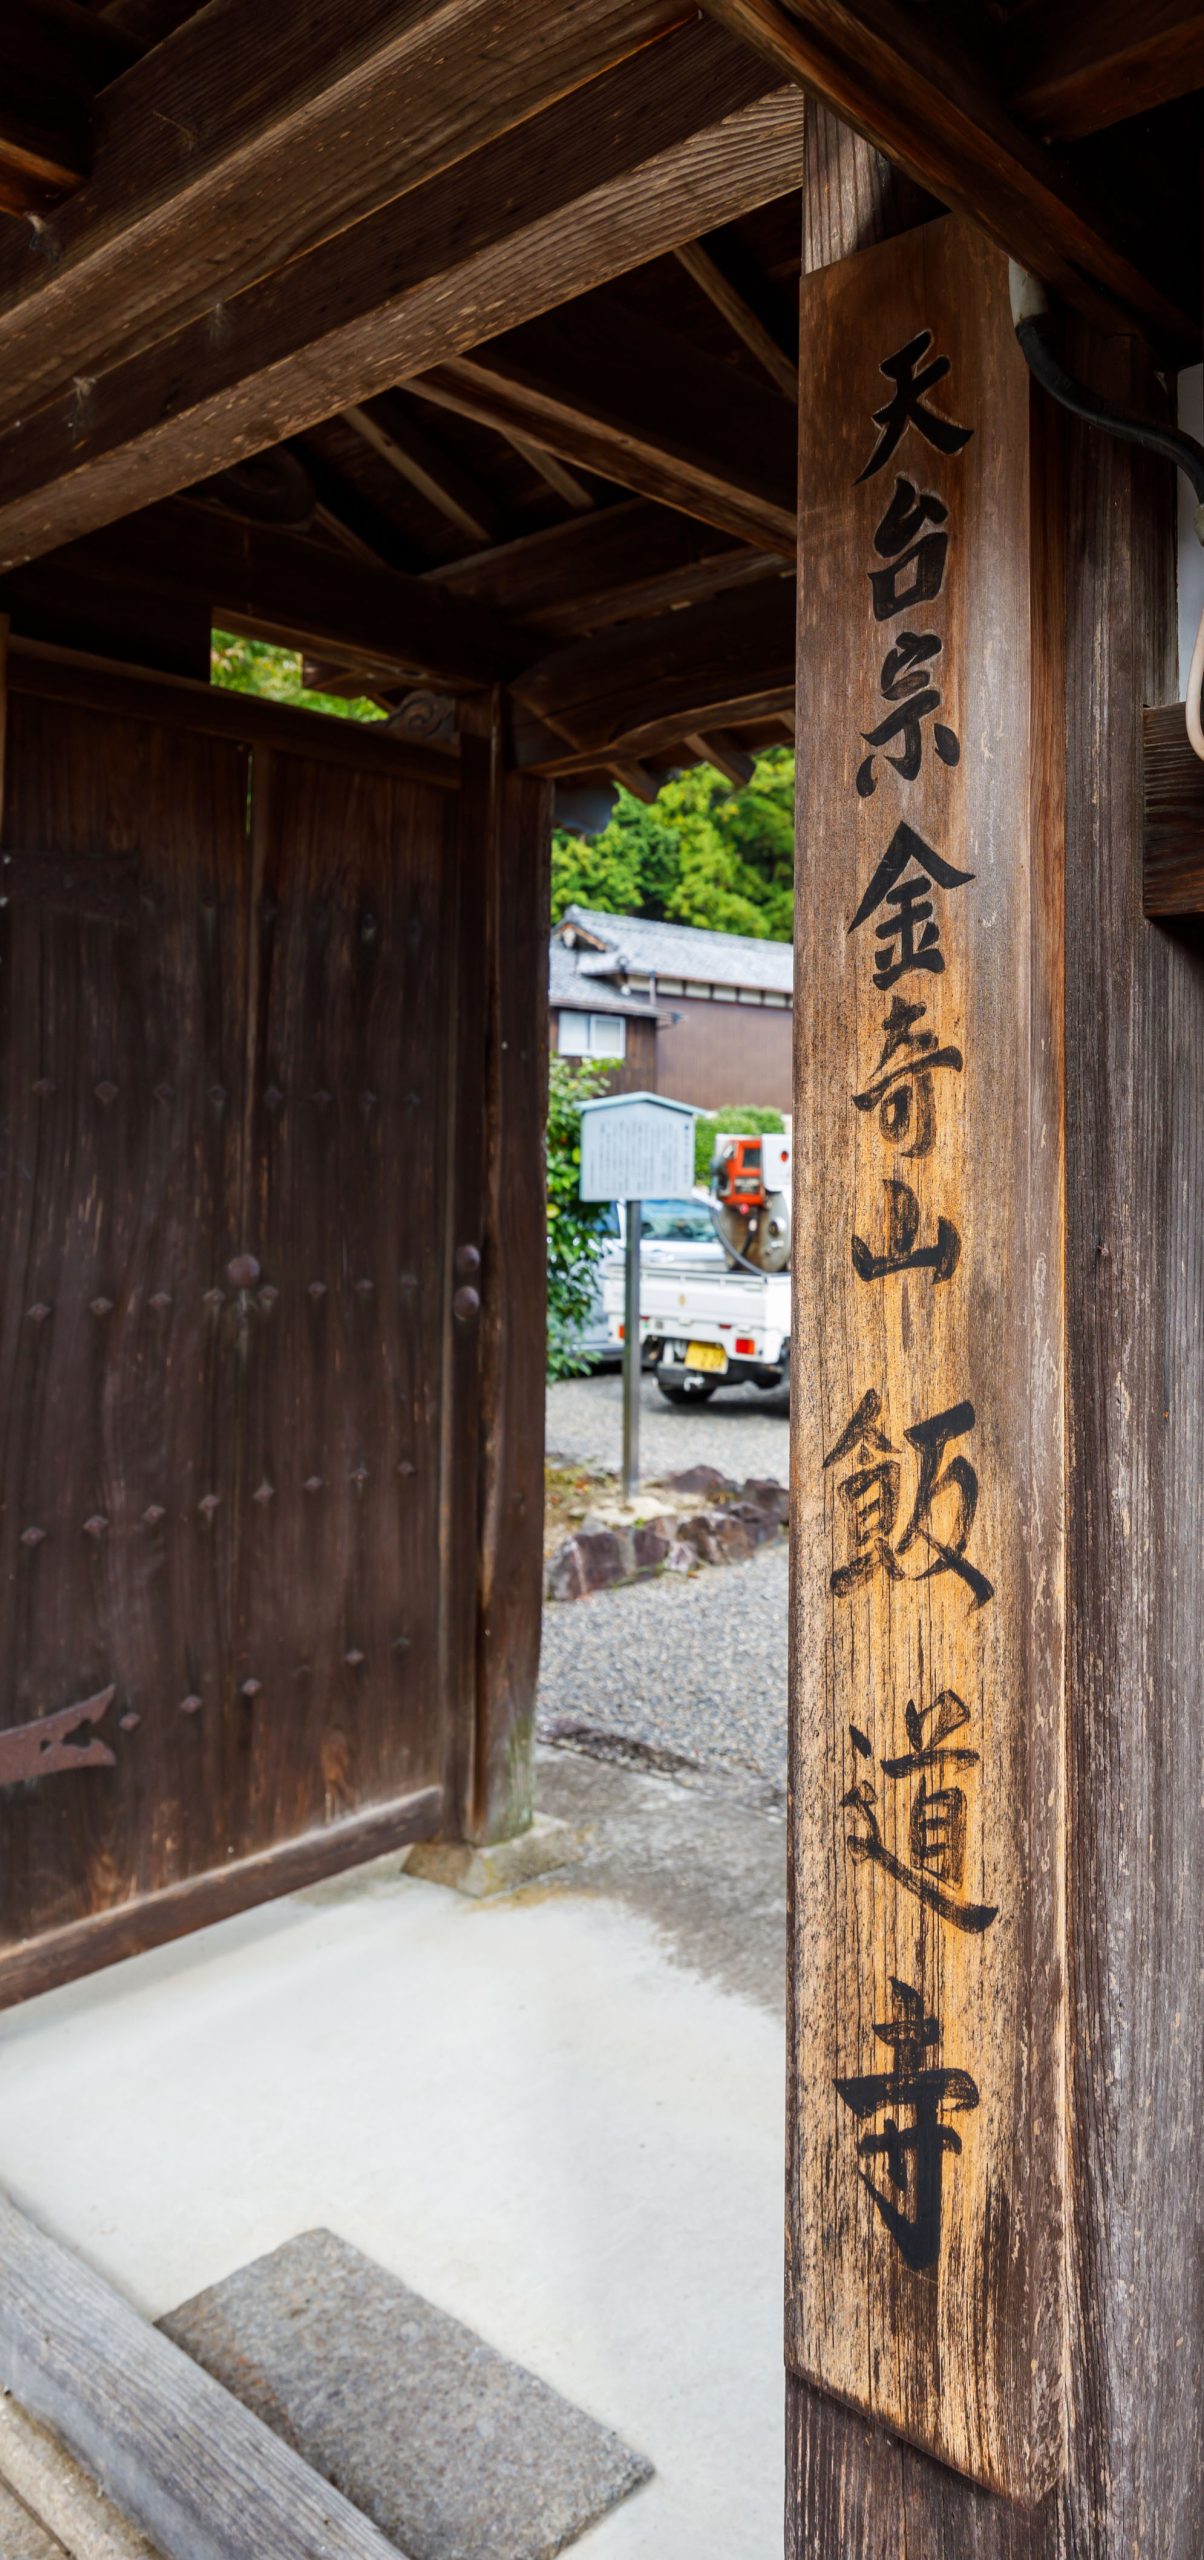 飯道山の修験を残す寺院「飯道寺」を訪れる